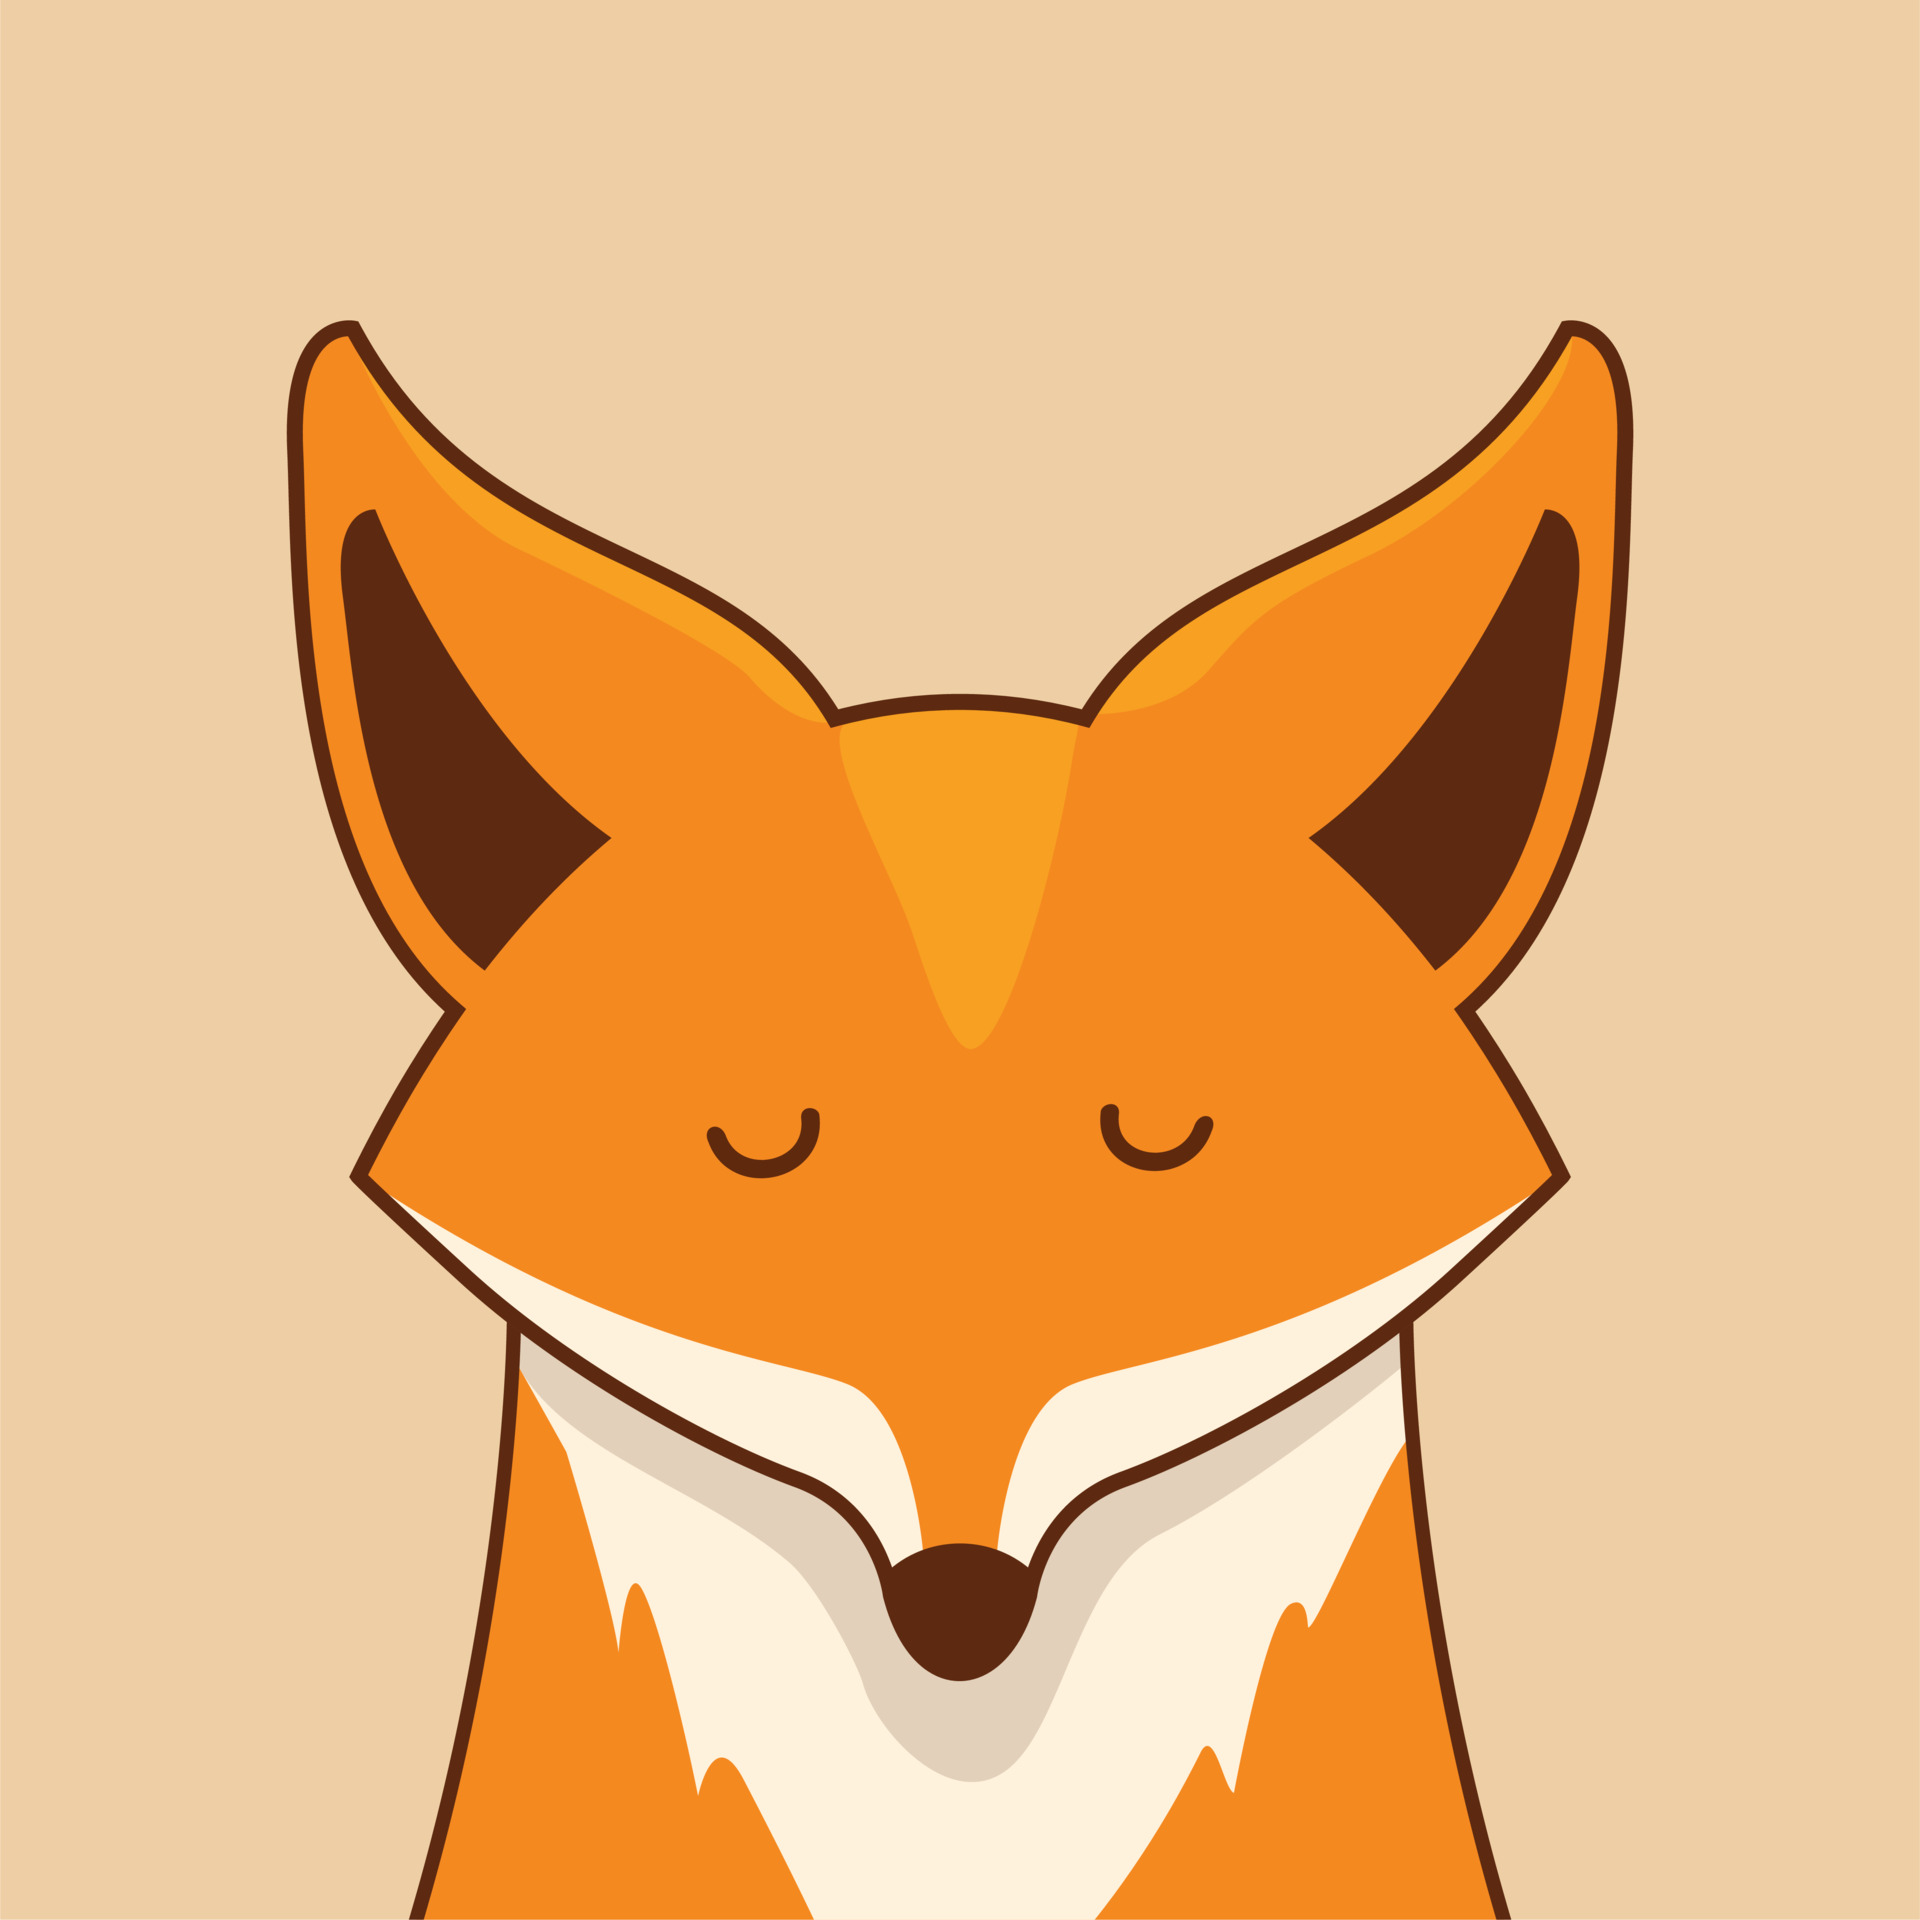 animais bonitos dos desenhos animados da raposa 3641179 Vetor no Vecteezy